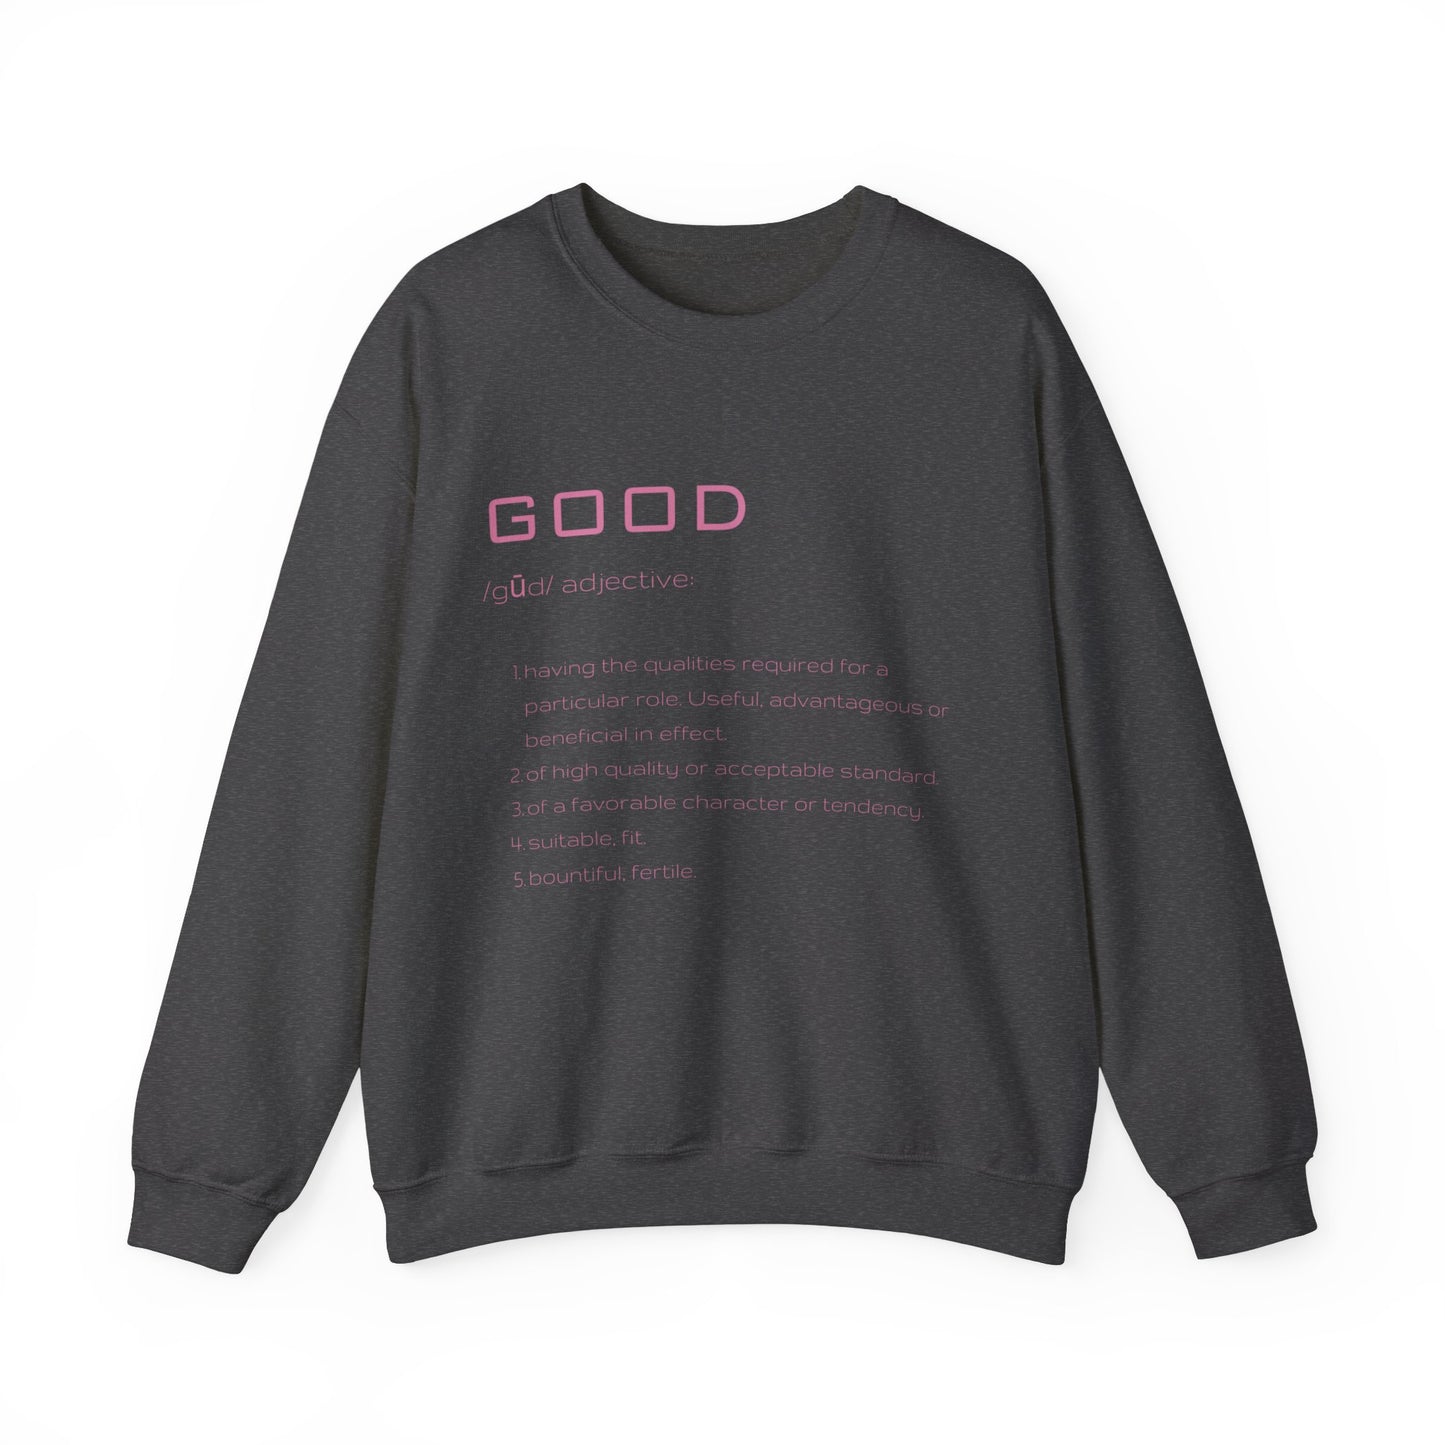 Good Definition Sweatshirt in dark gray